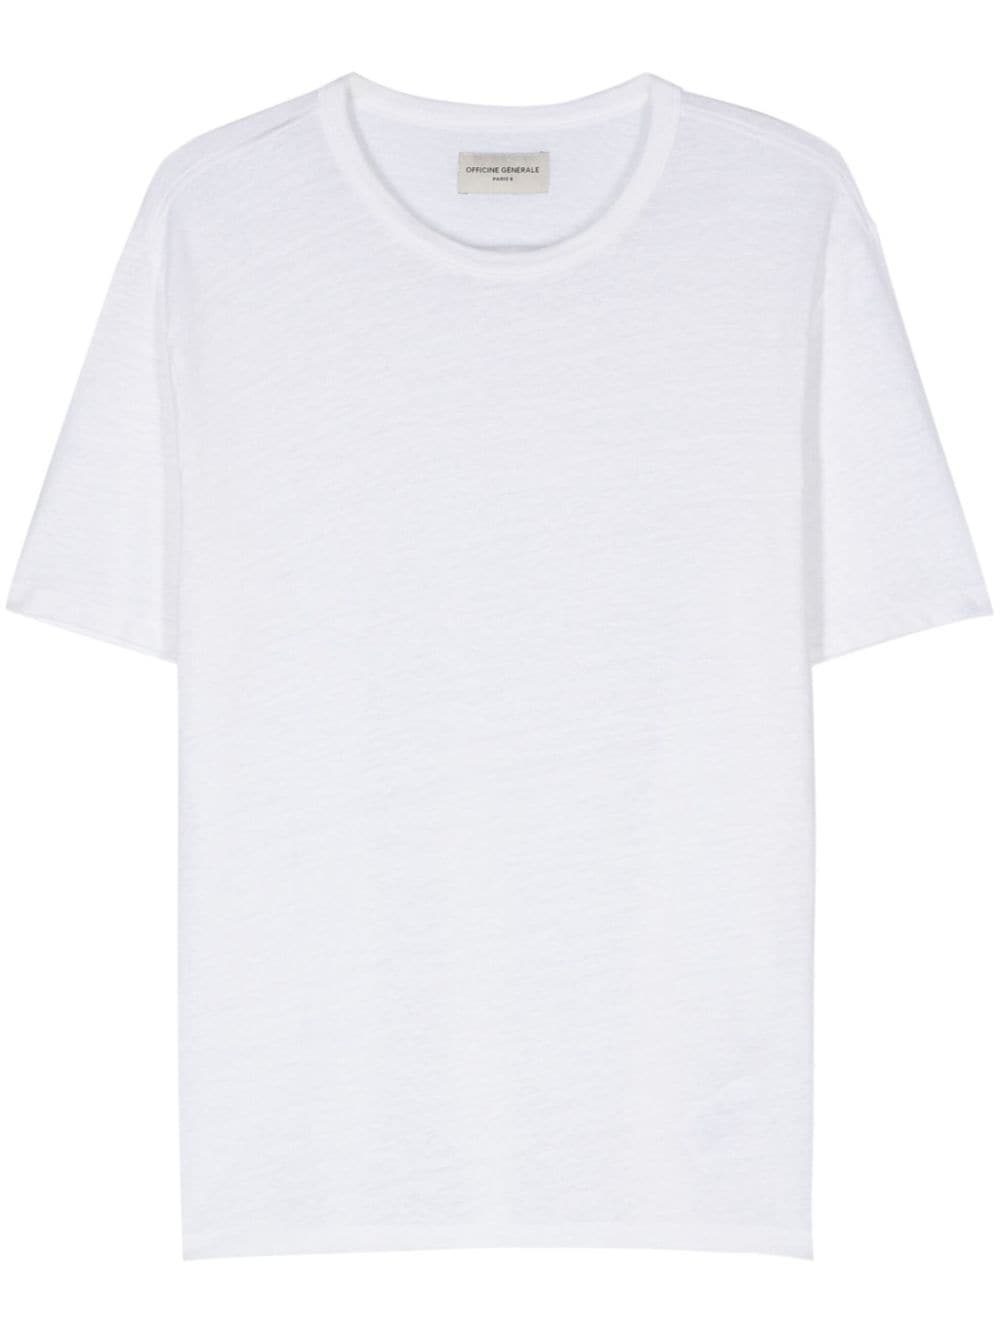 Officine Generale mélange shortsleeved T-shirt - White von Officine Generale